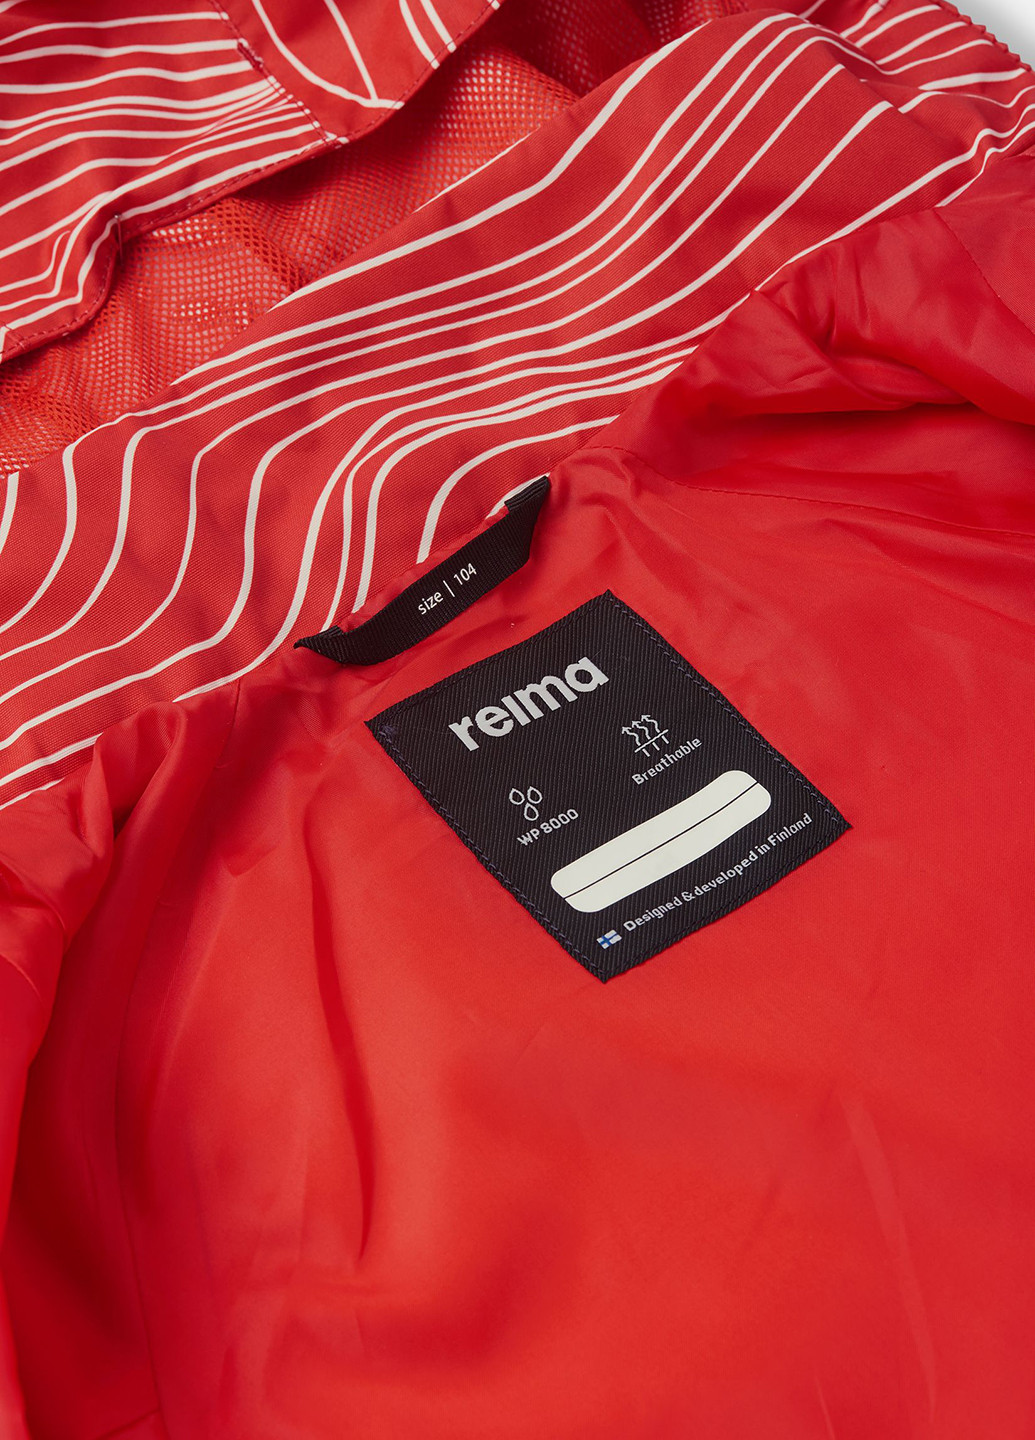 Красная демисезонная куртка Reima